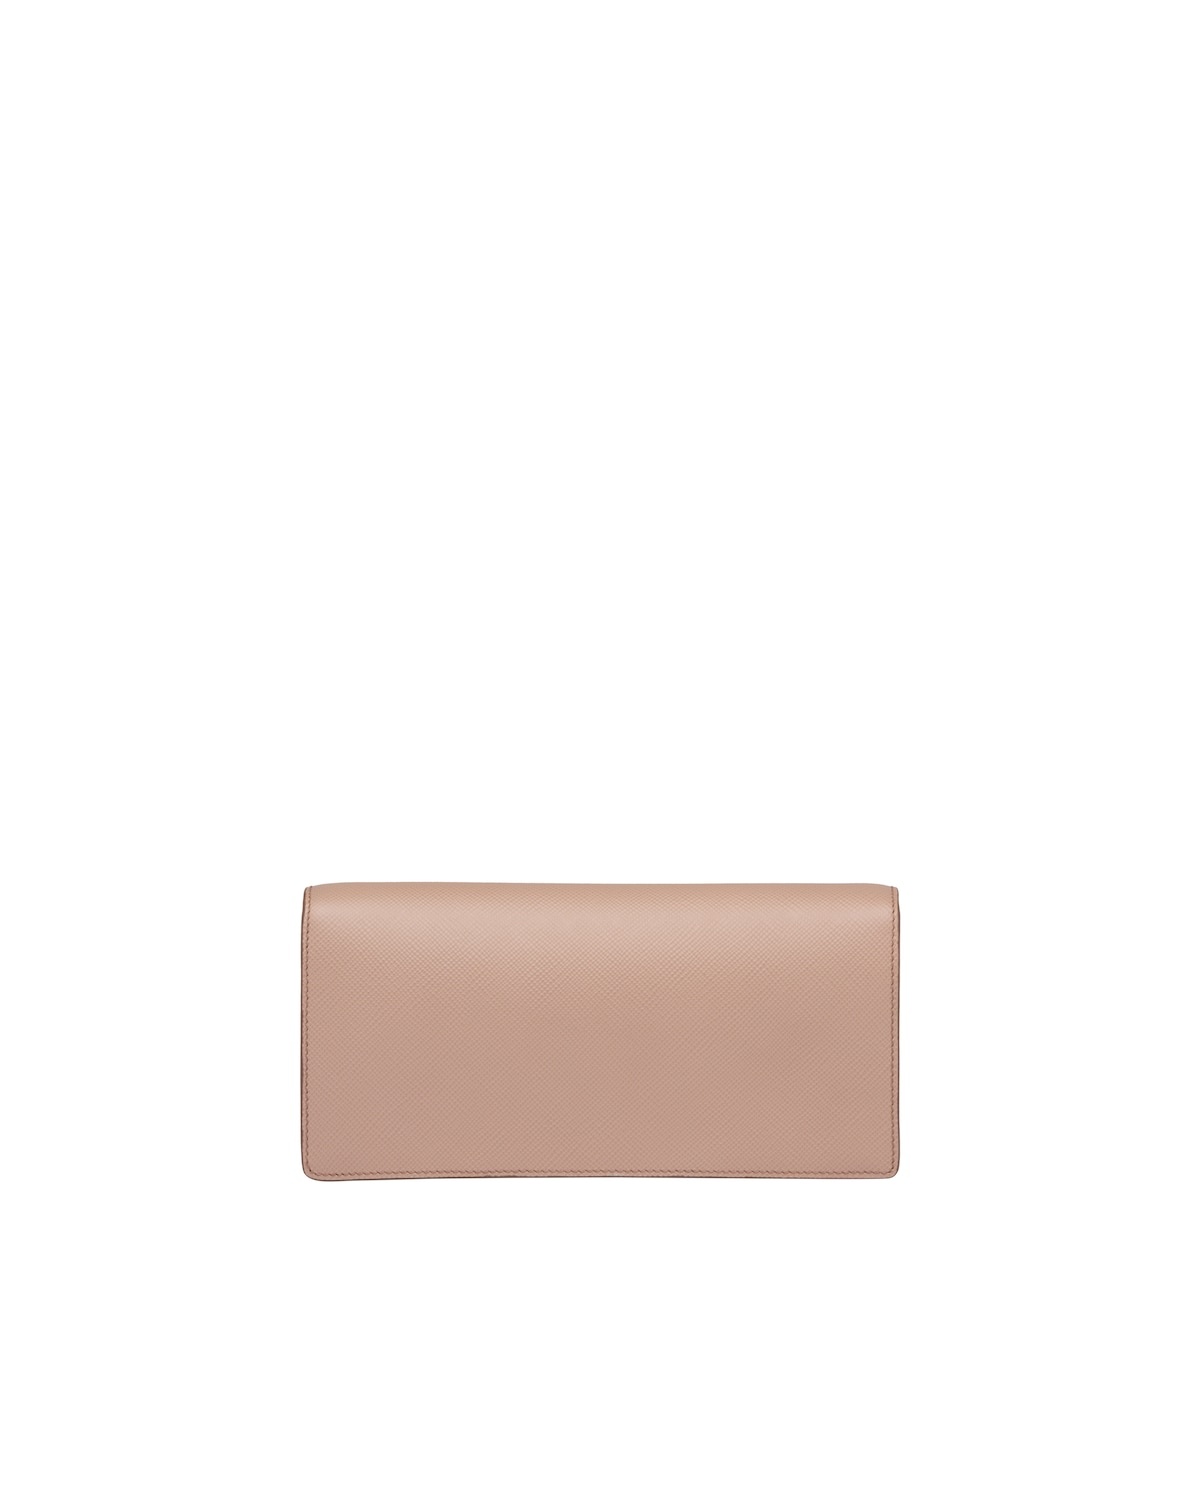 Prada Monochrome Saffiano leather clutch - 4